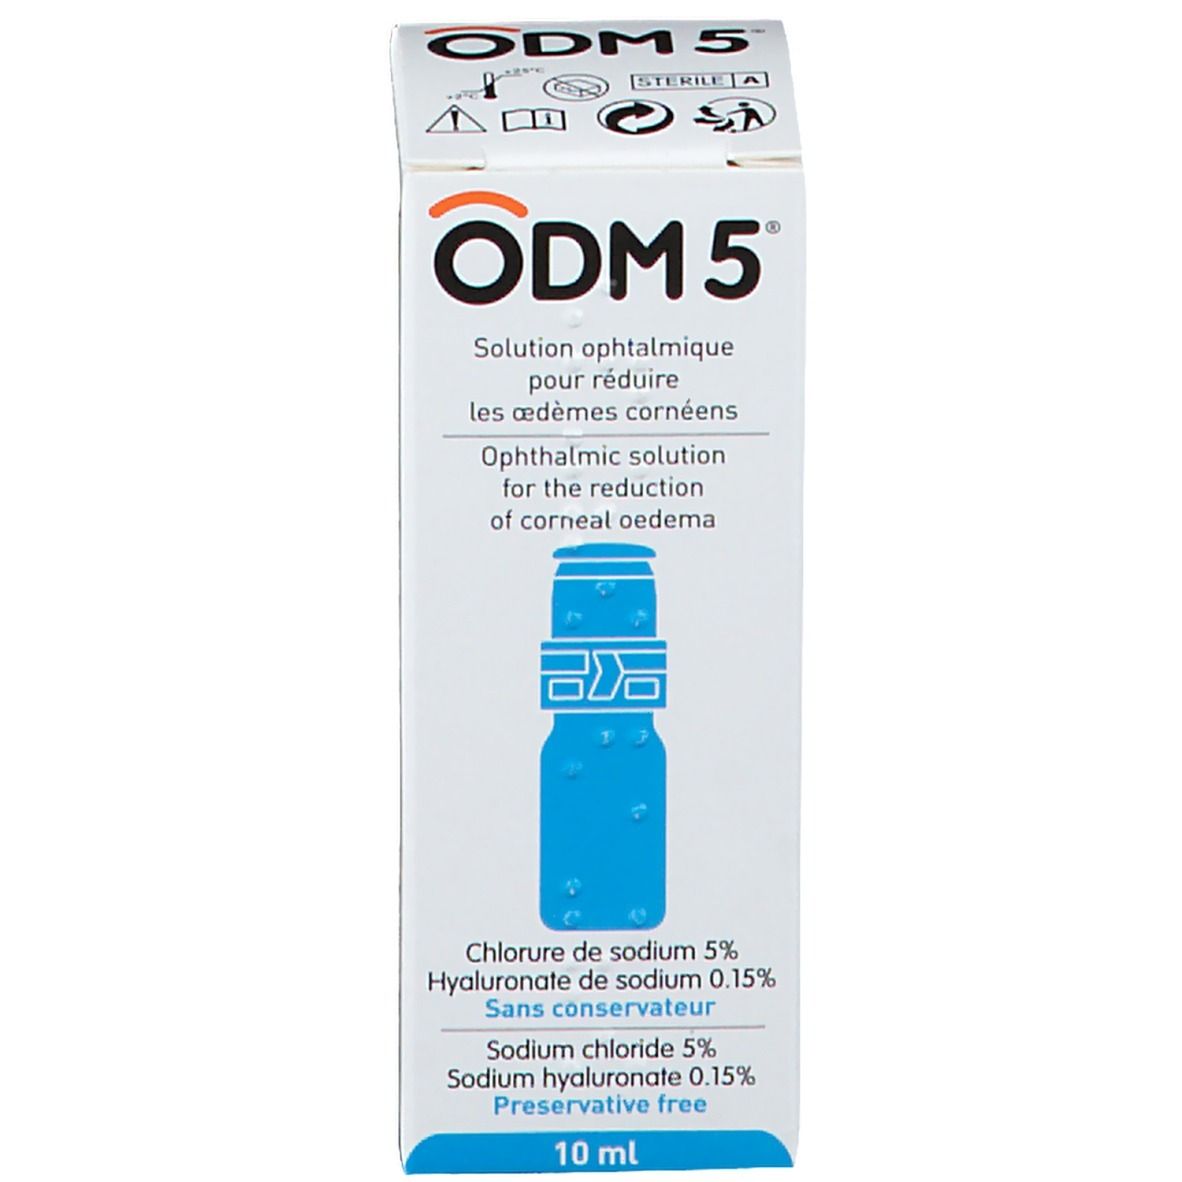 Horus Pharma ODM 5 Solution ophtalmique